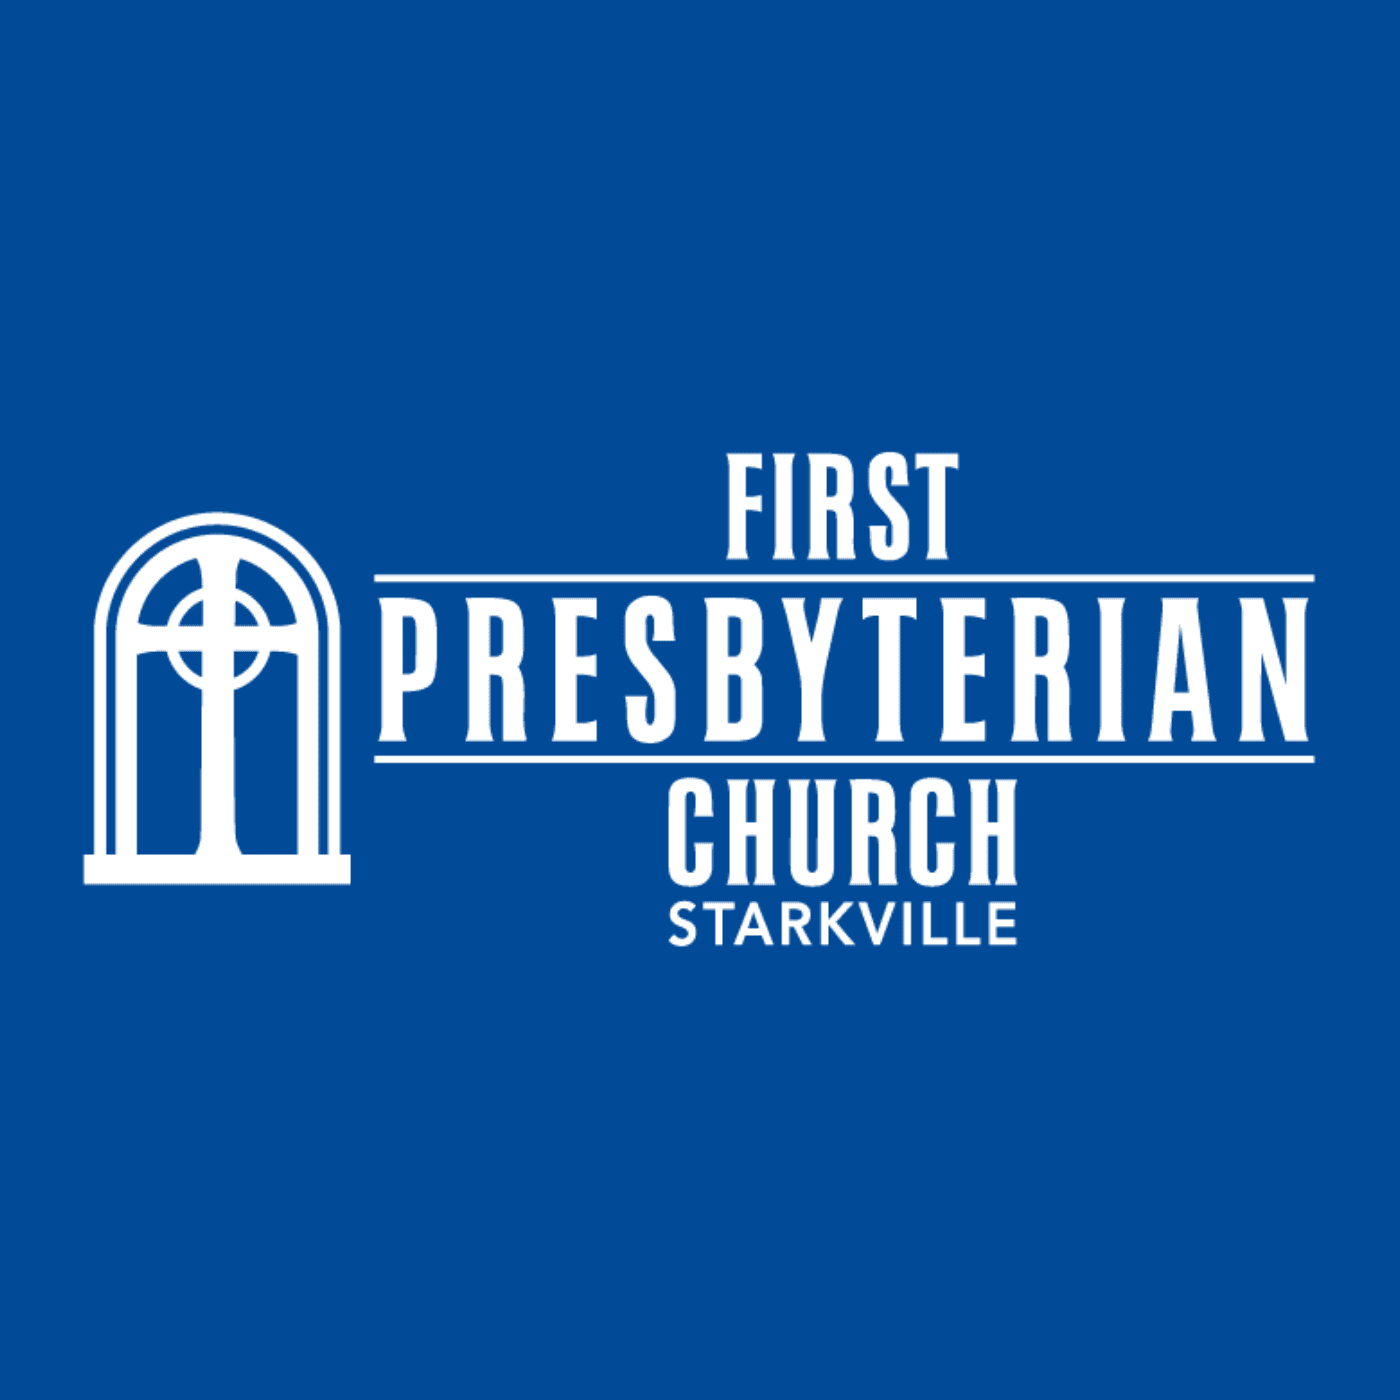 First Presbyterian Church Starkville